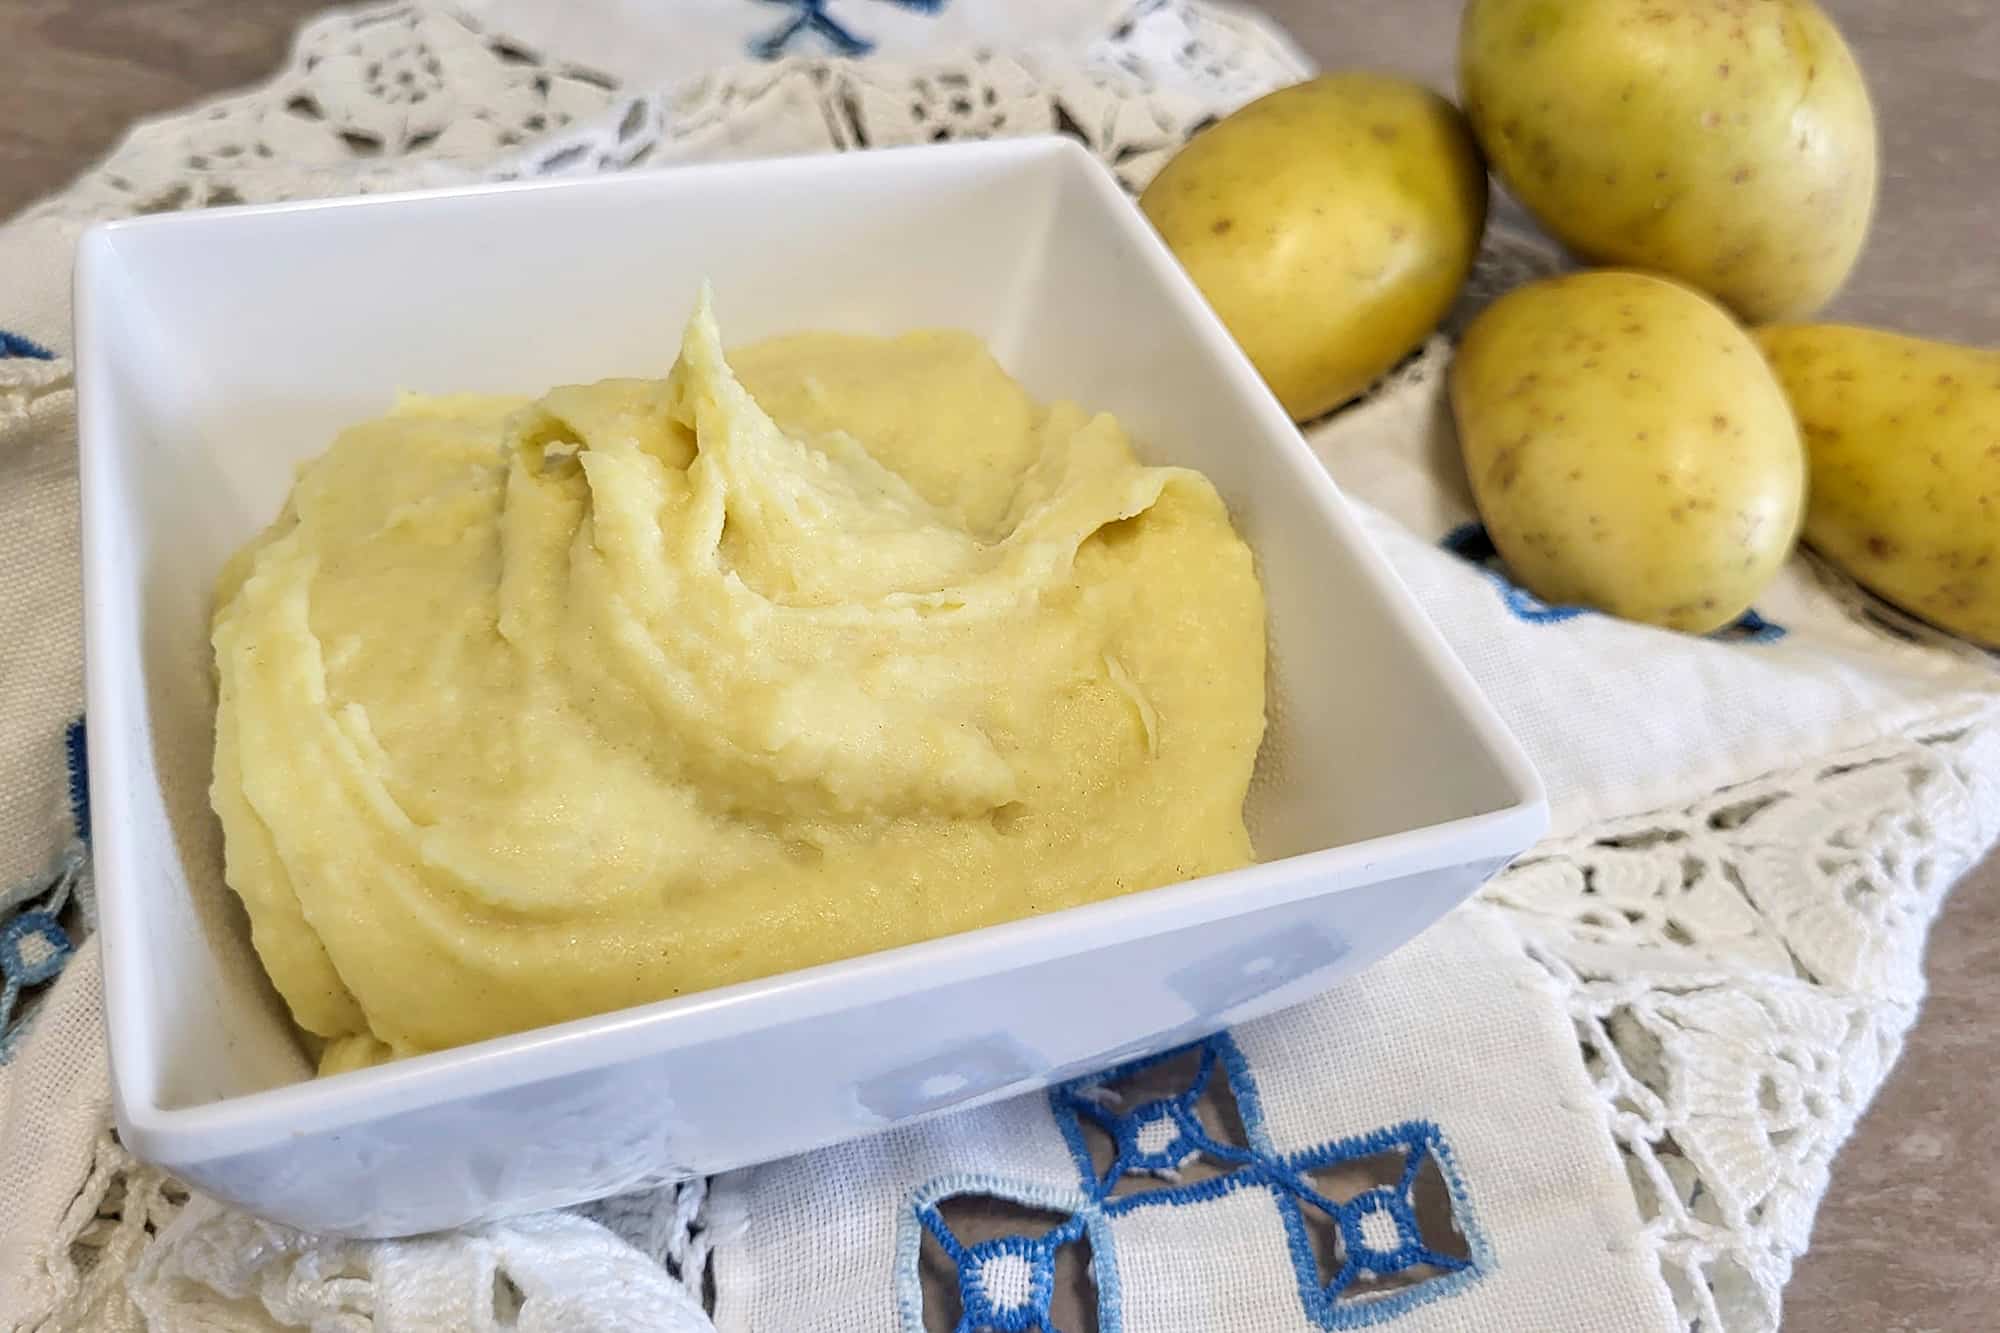 crema gialla densa in un piatto bianco